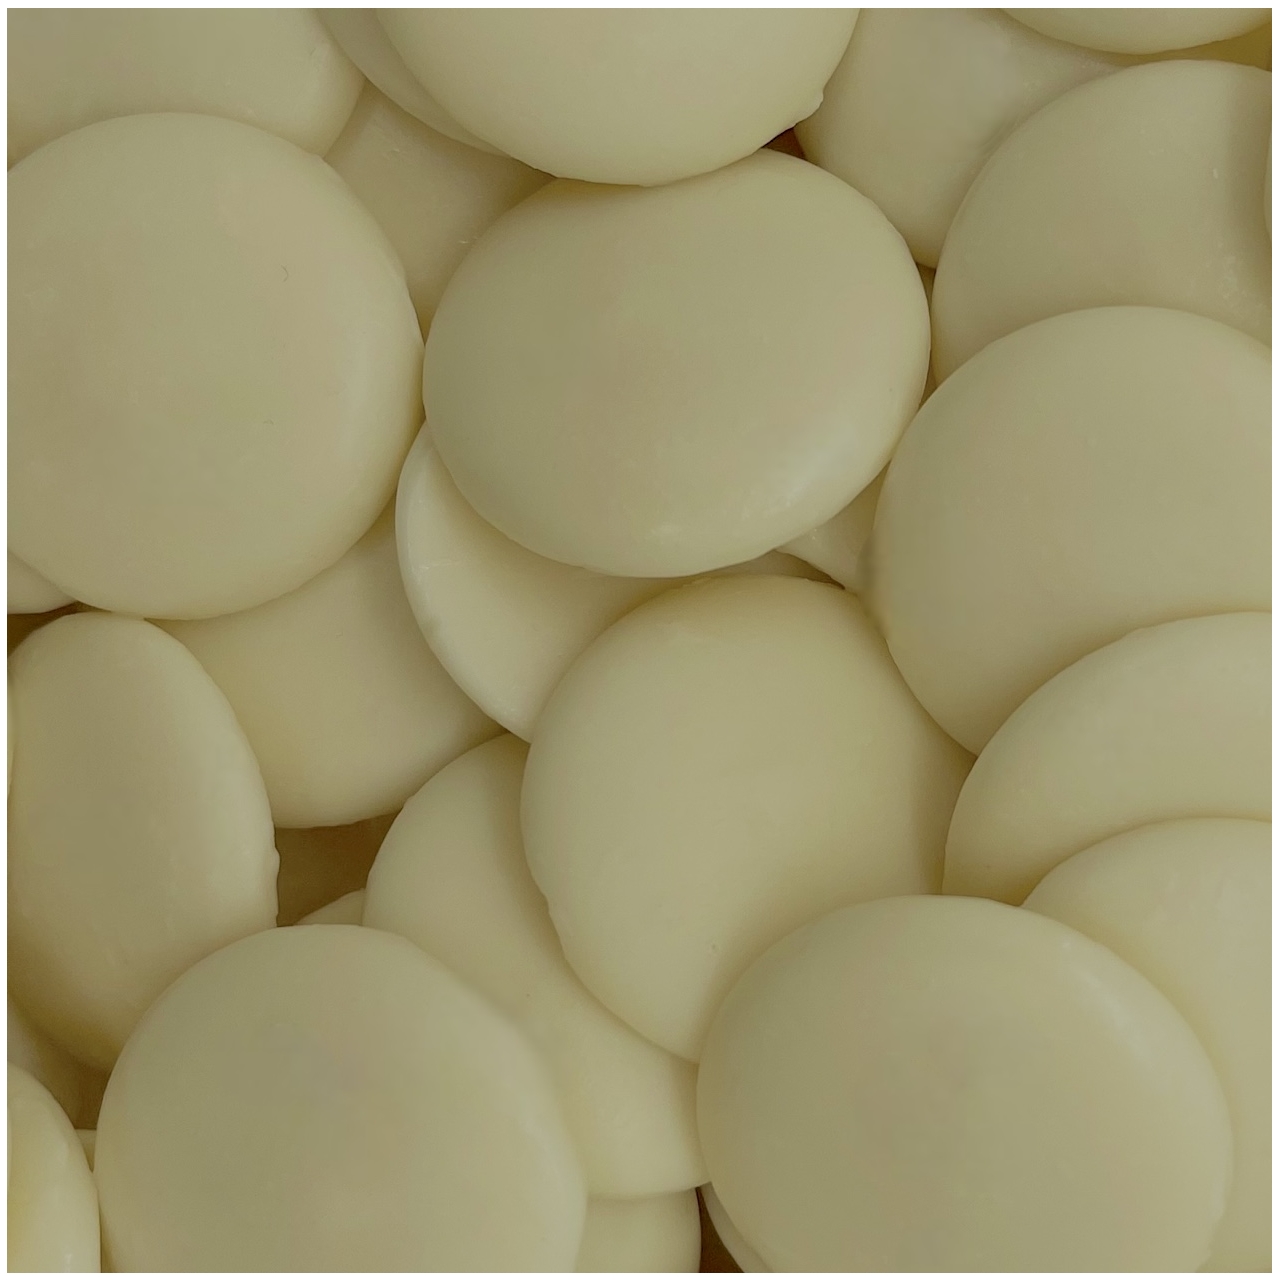 Schoko Buttons - Weisse Schokolade - 15 Kg - (30%) Belcolade